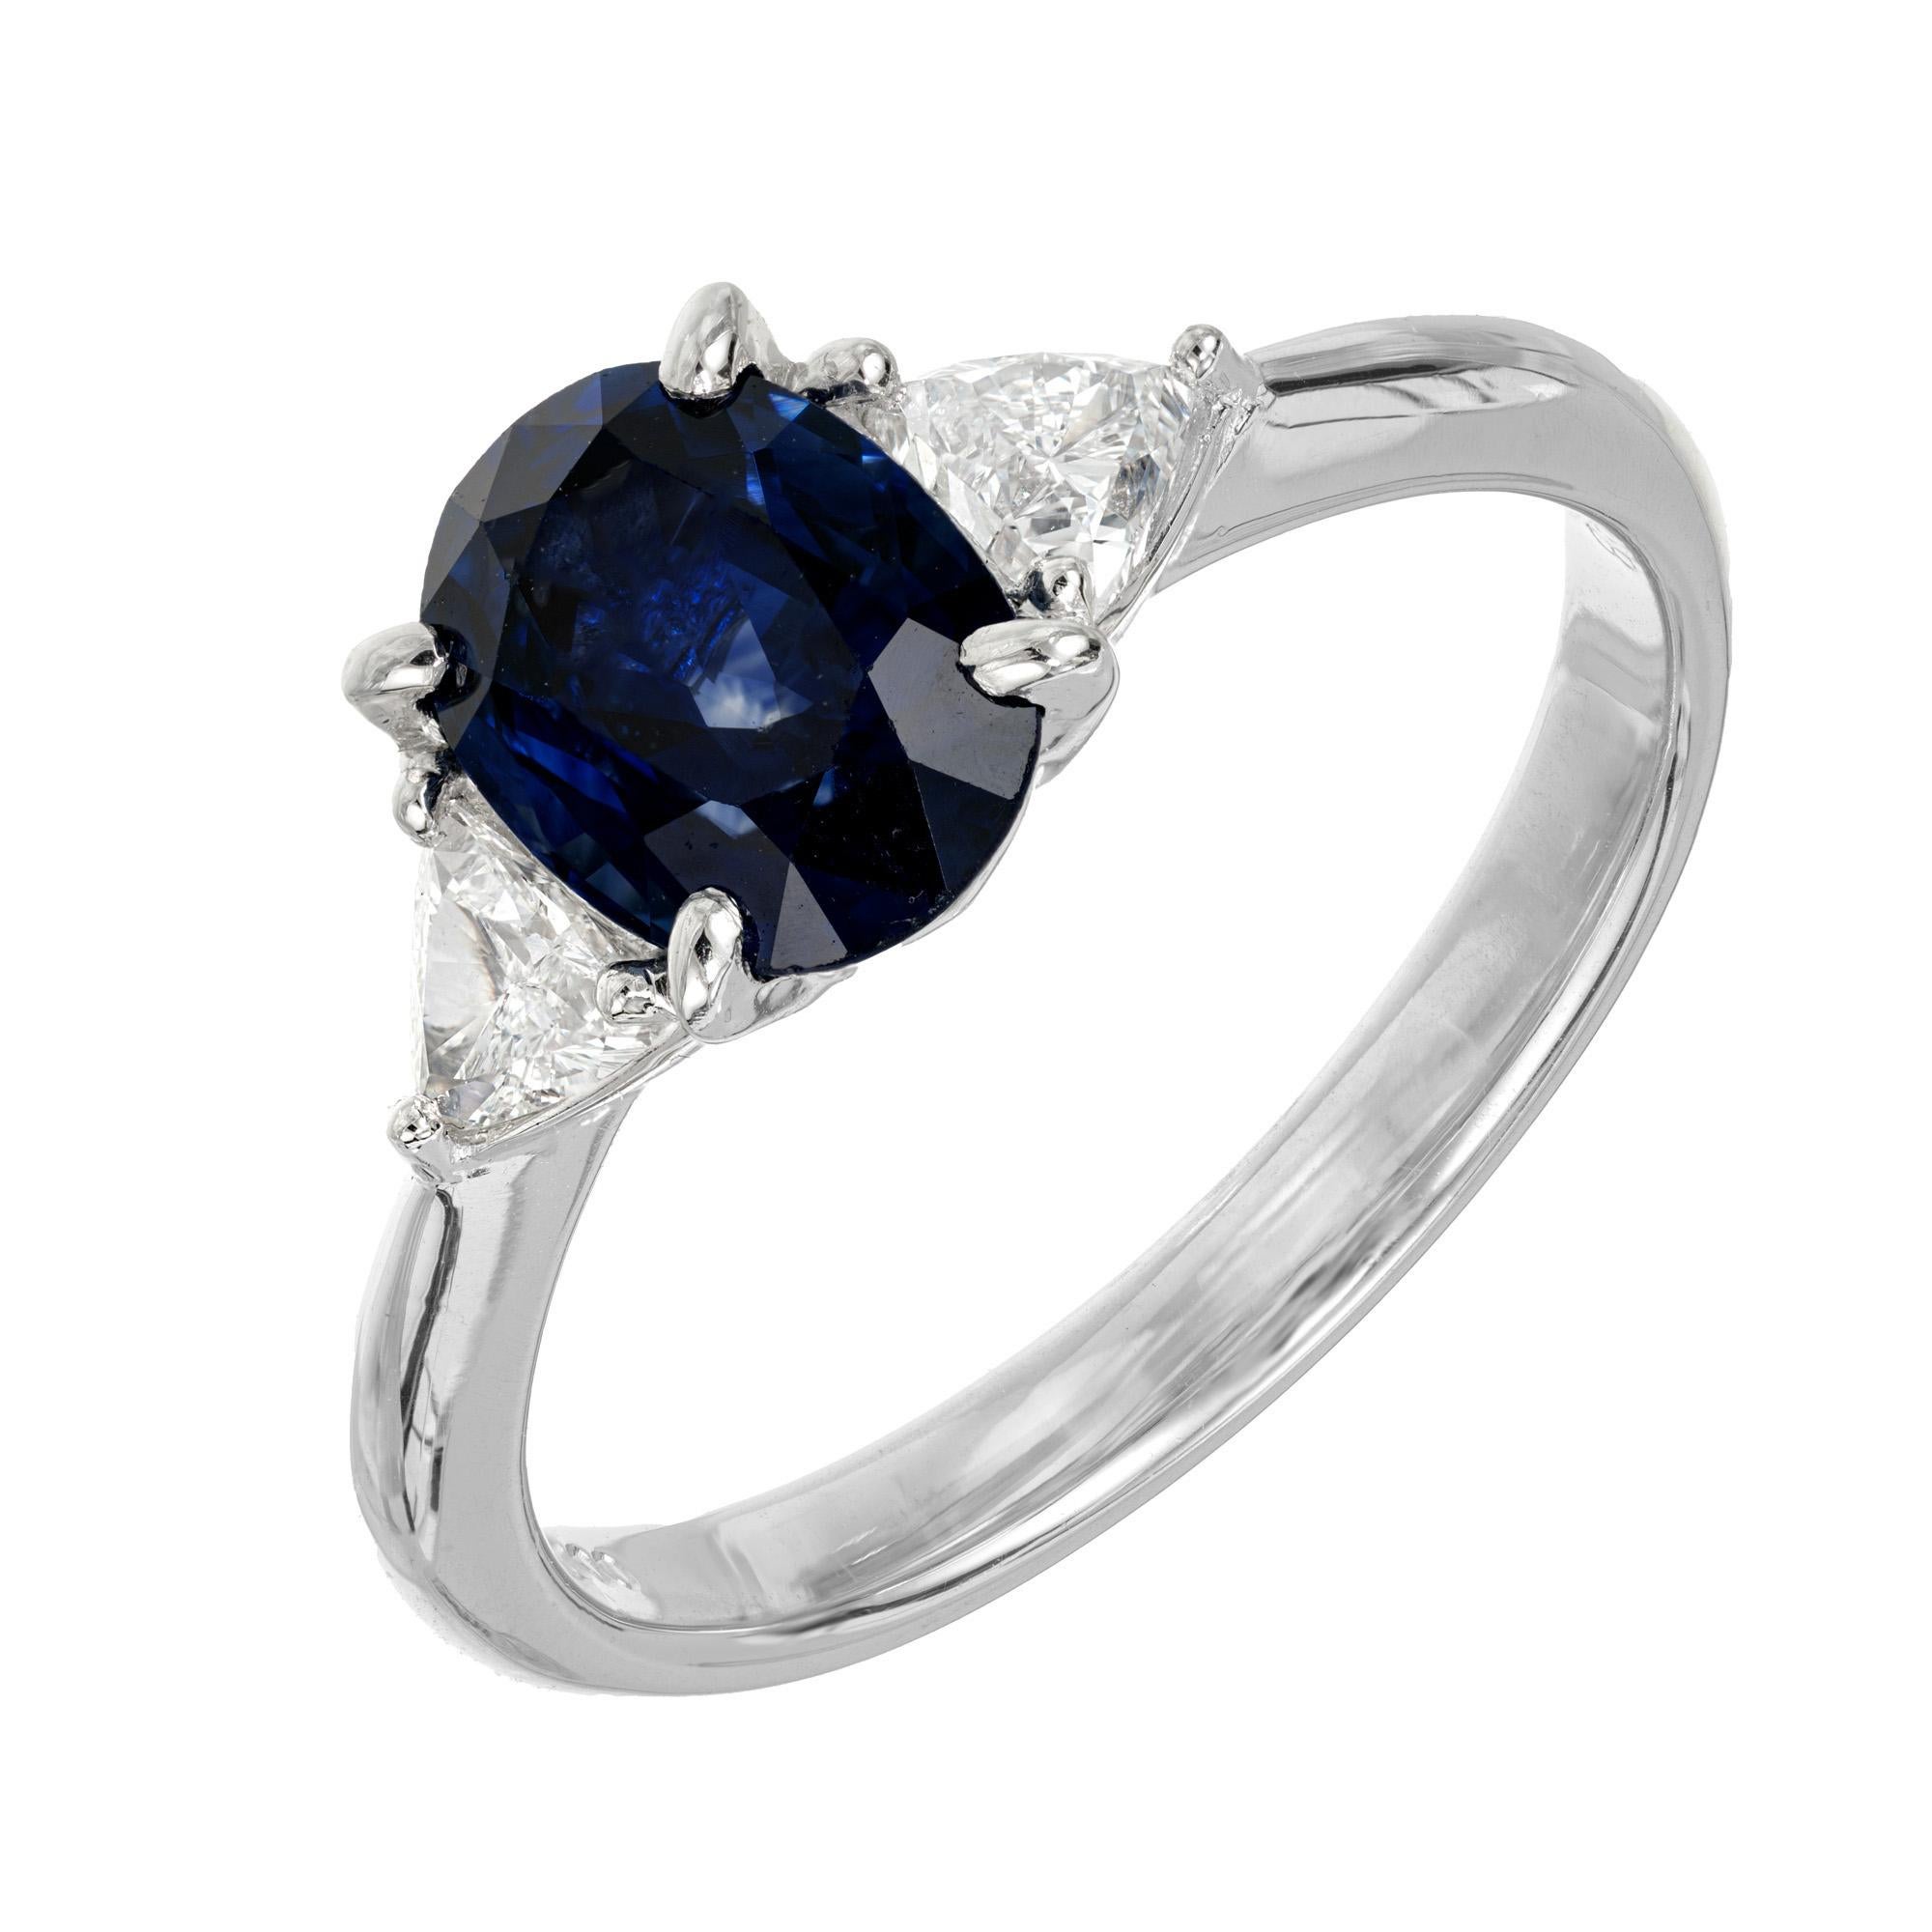 Verlobungsring mit tiefblauem Saphir und Diamant. GIA-zertifizierter ovaler blauer Saphir von 1,85 Karat, gefasst in einer Platin-Dreisteinfassung mit 2 seitlichen Diamanten im Trillantschliff von G-H (nahezu farblos). Der Saphir ist einfach nur